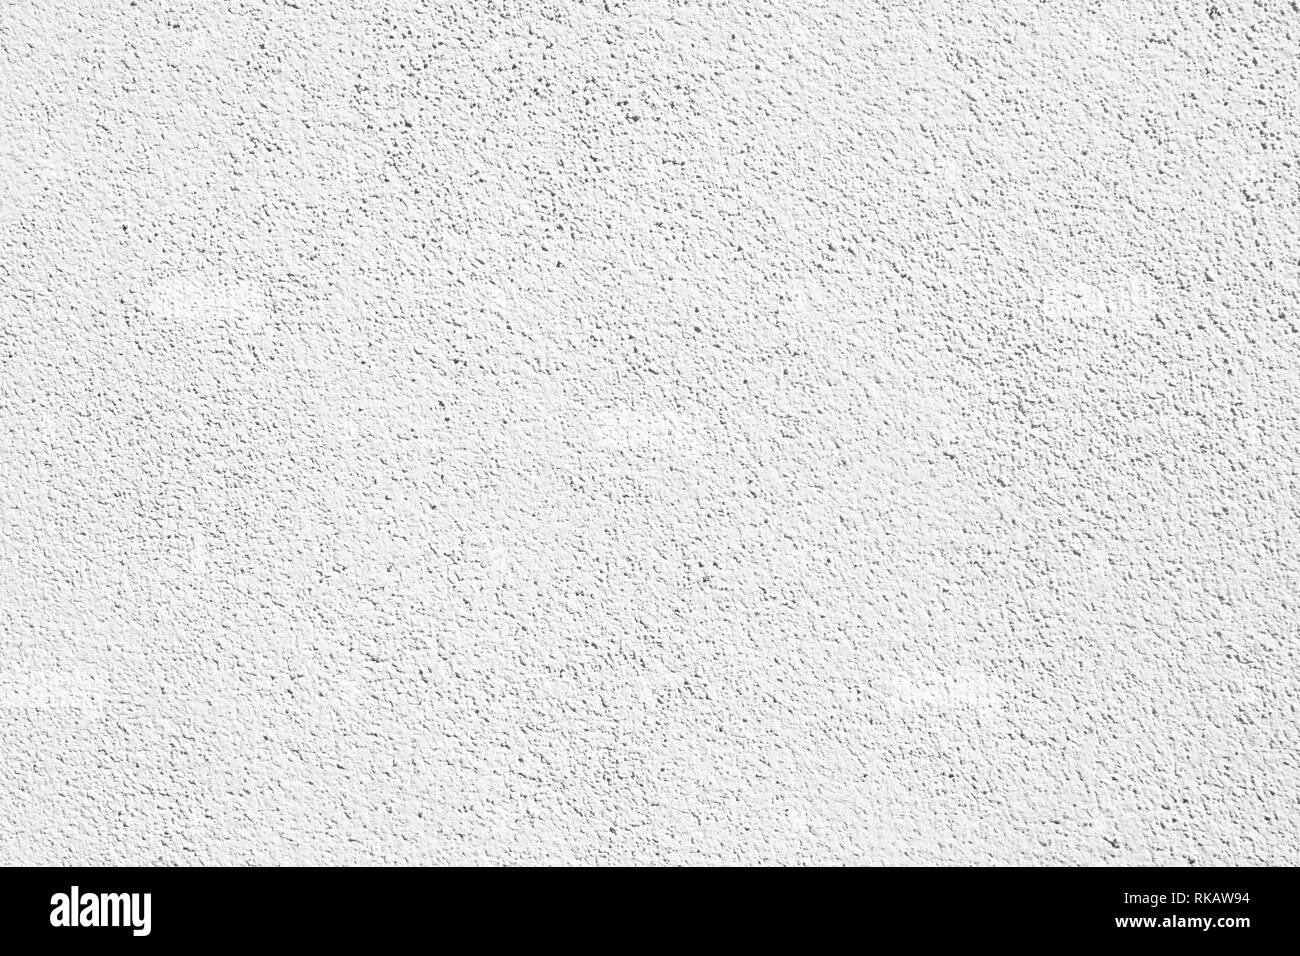 Mur avec structure blanche toile de fond pour la composition d'un magazine ou site web design graphique Banque D'Images